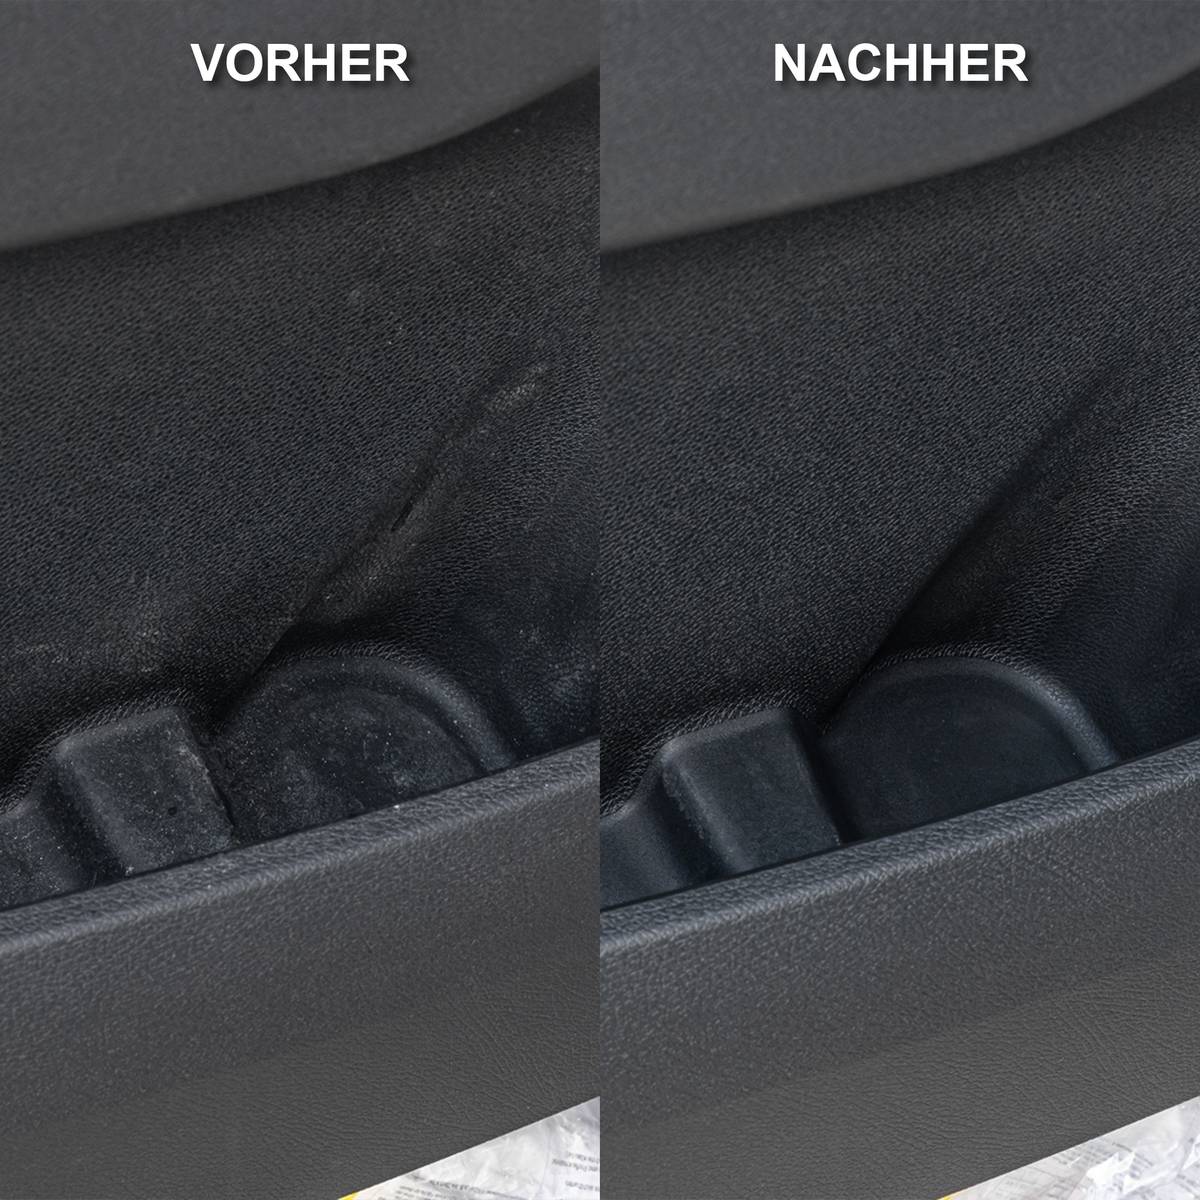 Fahrzeug-Innenreiniger Konzentrat - 4,8 Liter - CLEANPRODUCTS